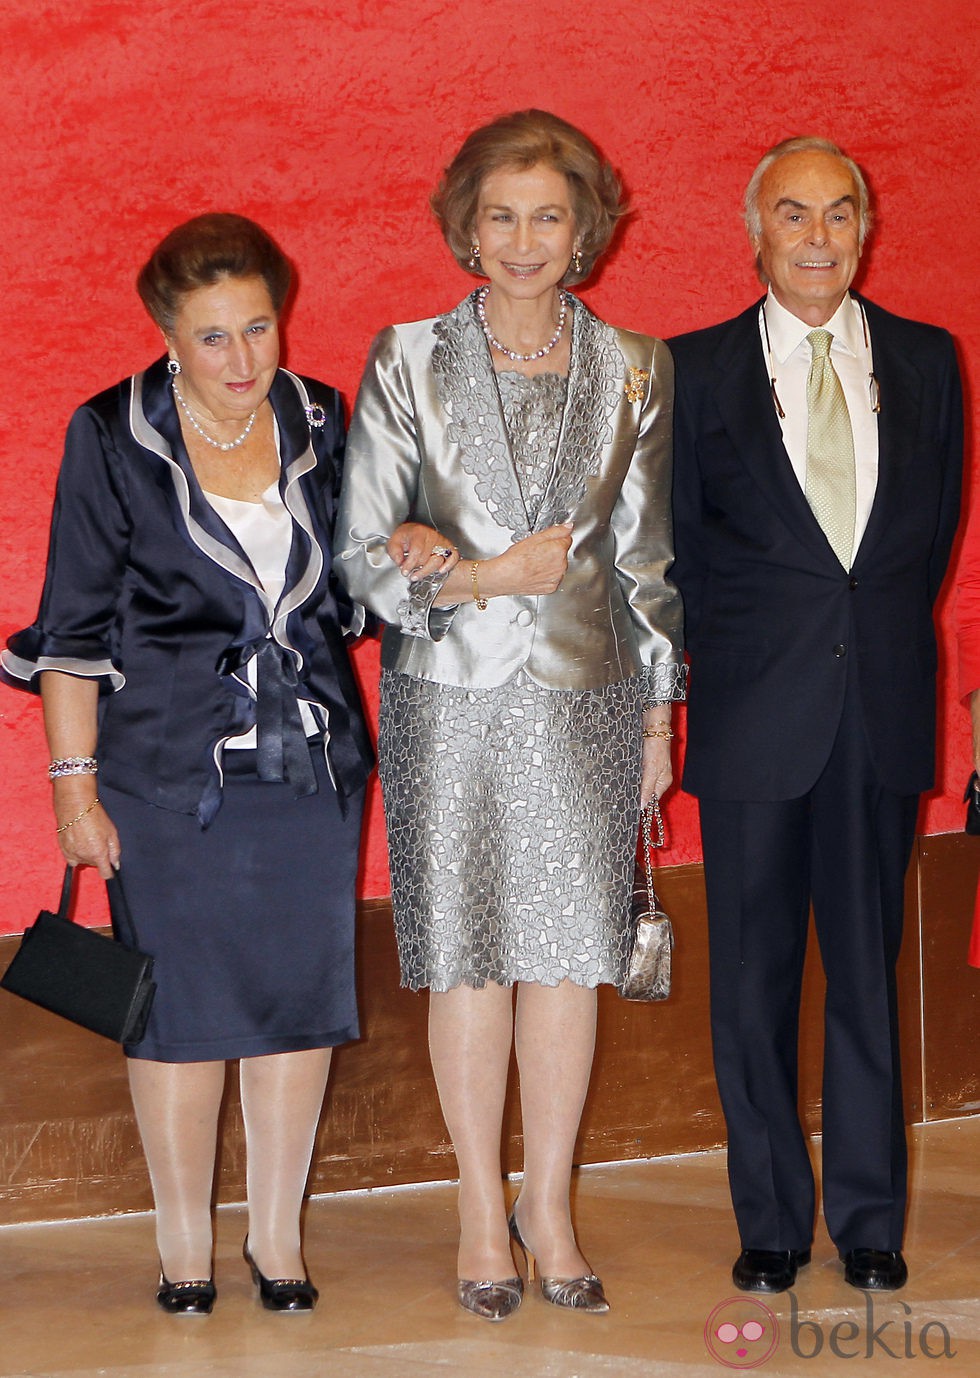 Reina Sofía y los Duques de Soria en el homenaje a Carlos Zurita